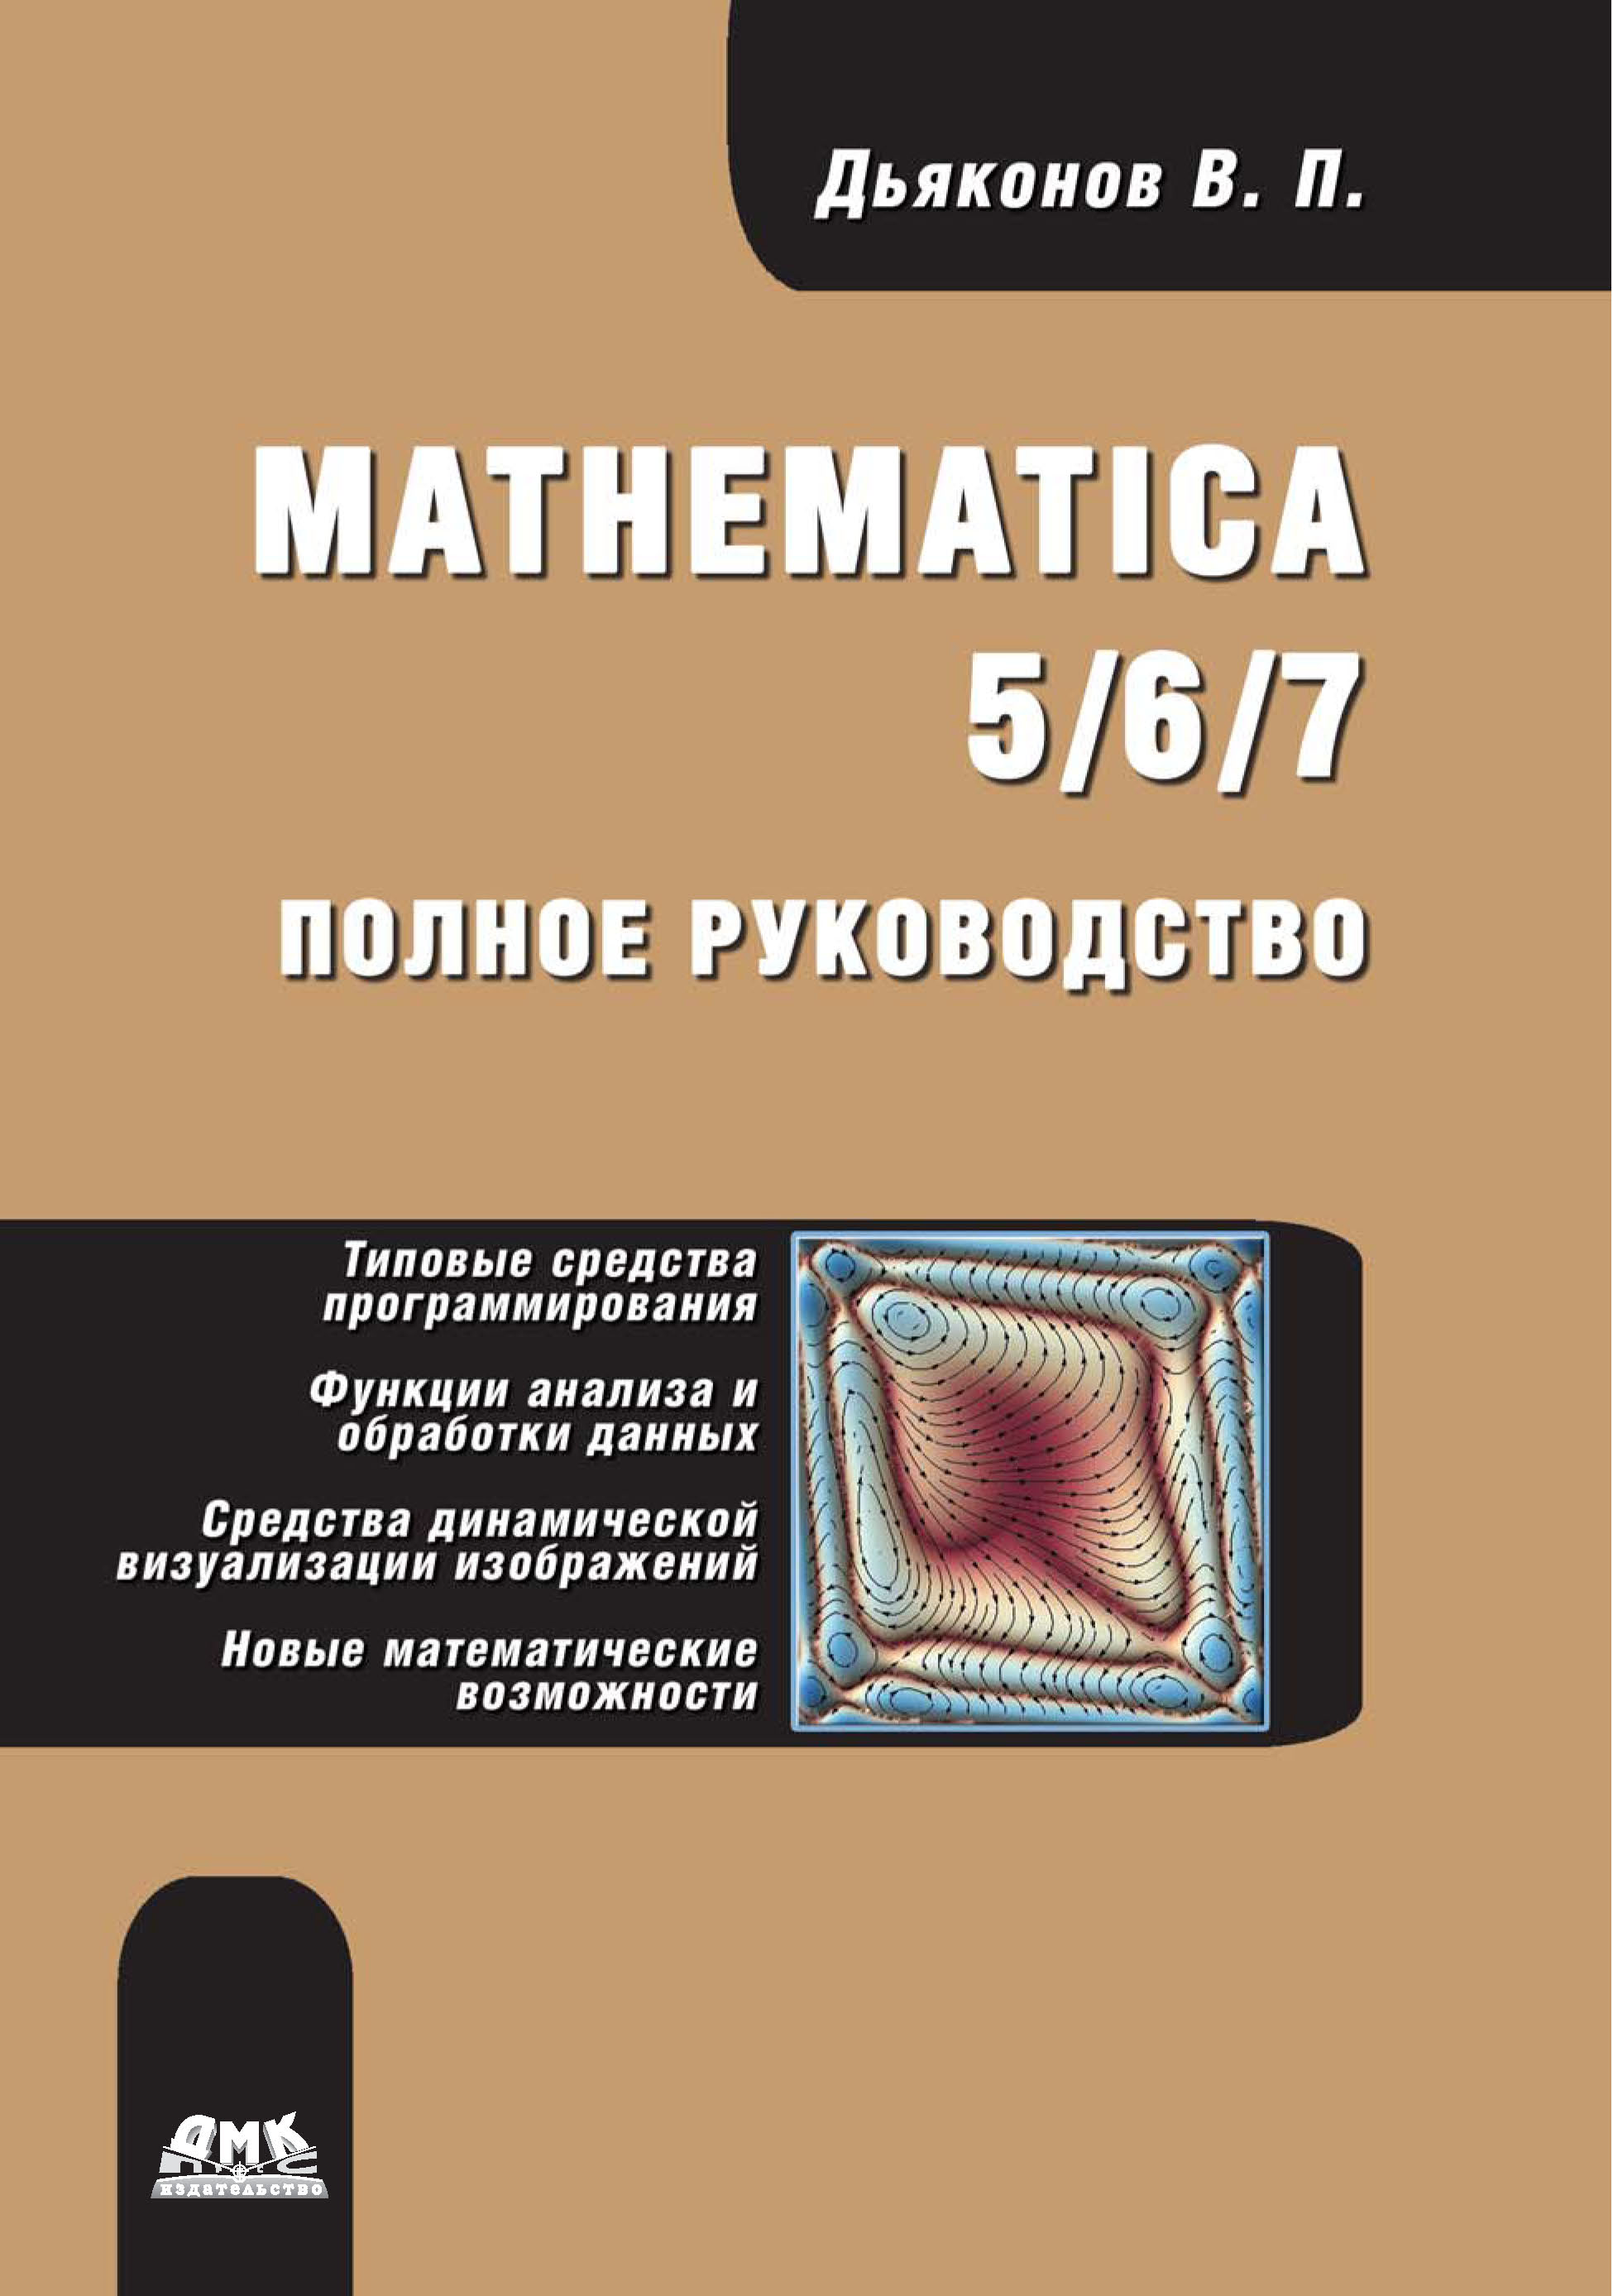 Книга  Mathematica 5/6/7. Полное руководство созданная В. П. Дьяконов может относится к жанру математика, программы, руководства. Стоимость электронной книги Mathematica 5/6/7. Полное руководство с идентификатором 22784921 составляет 319.00 руб.